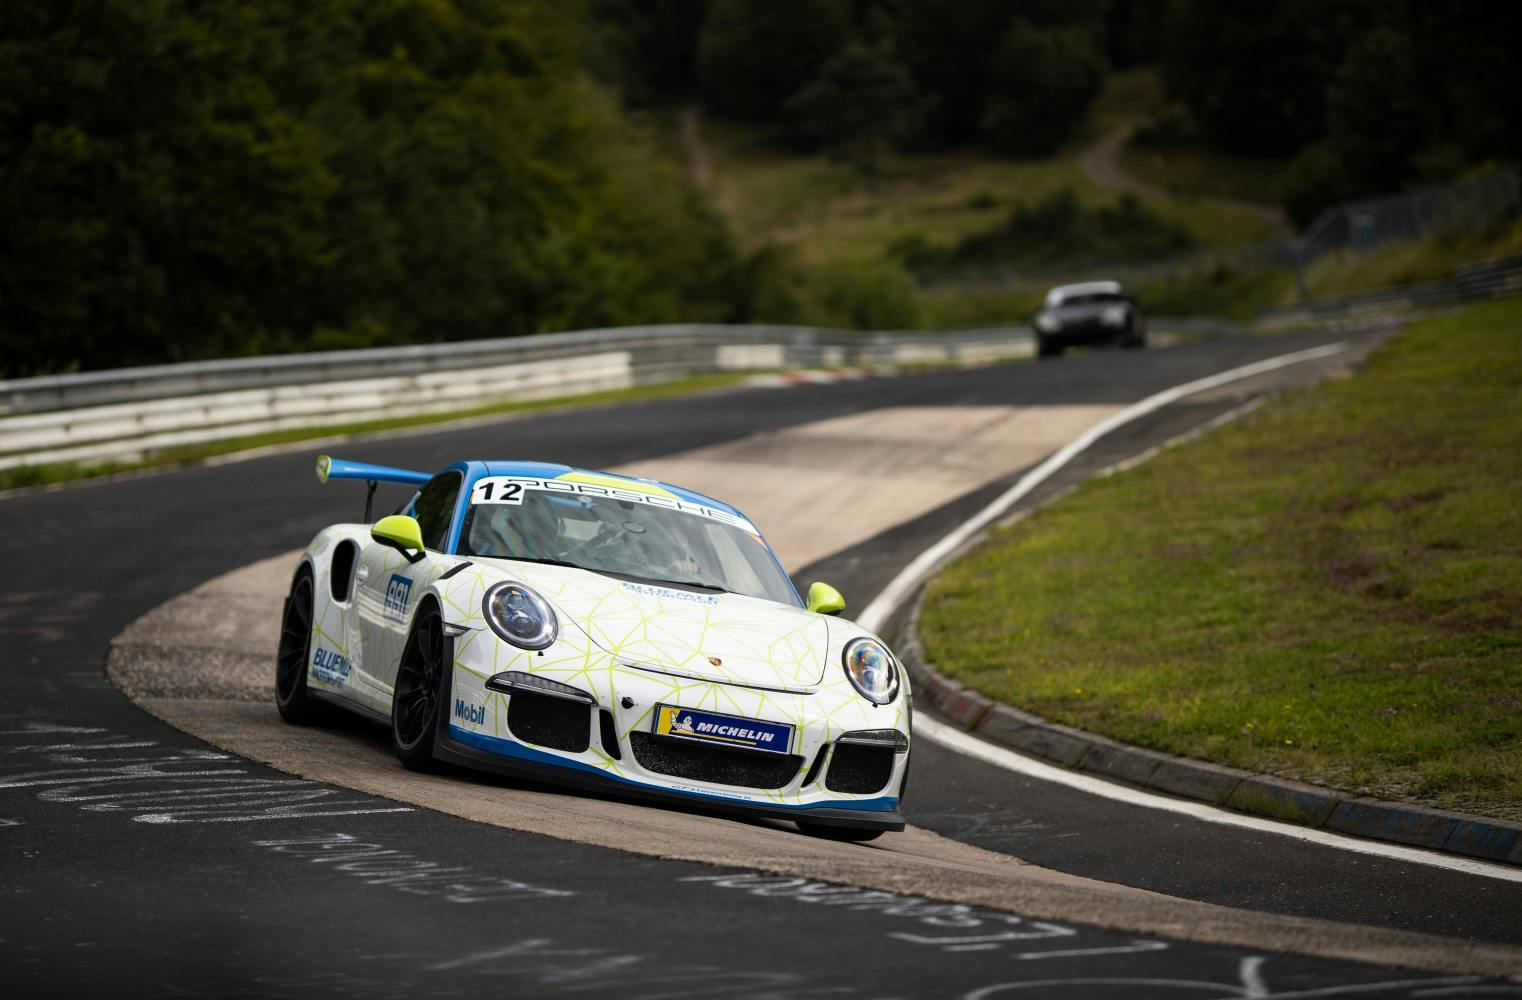 Porsche 911 GT3 RS 991 selber fahren | auf DER Rennstrecke